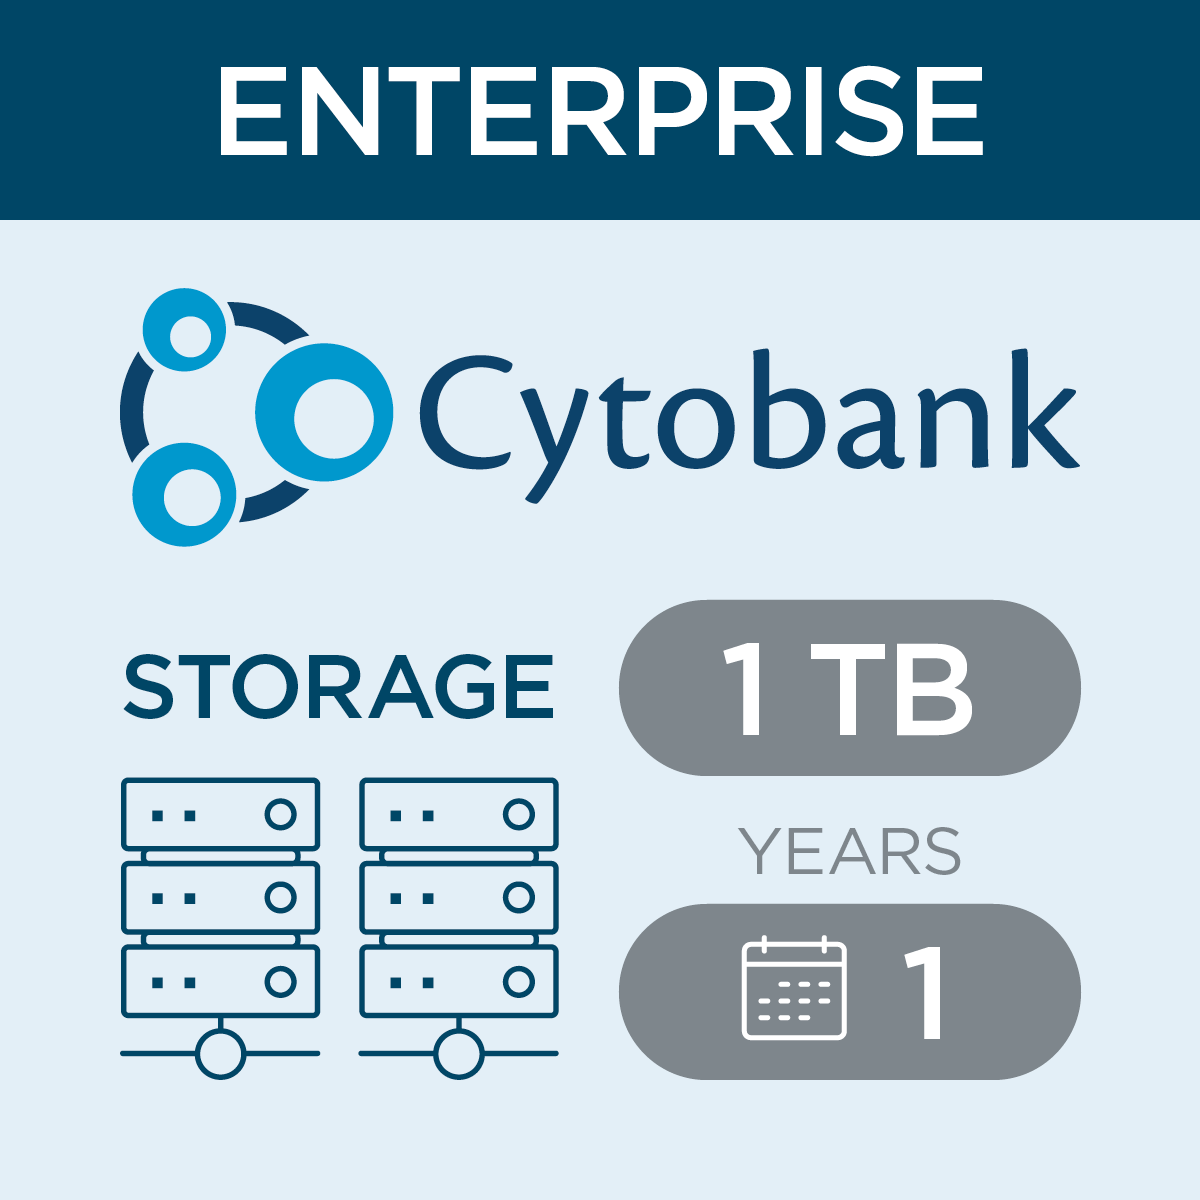 c47416, Cytobank Storage per TB for Enterprise, 1-year